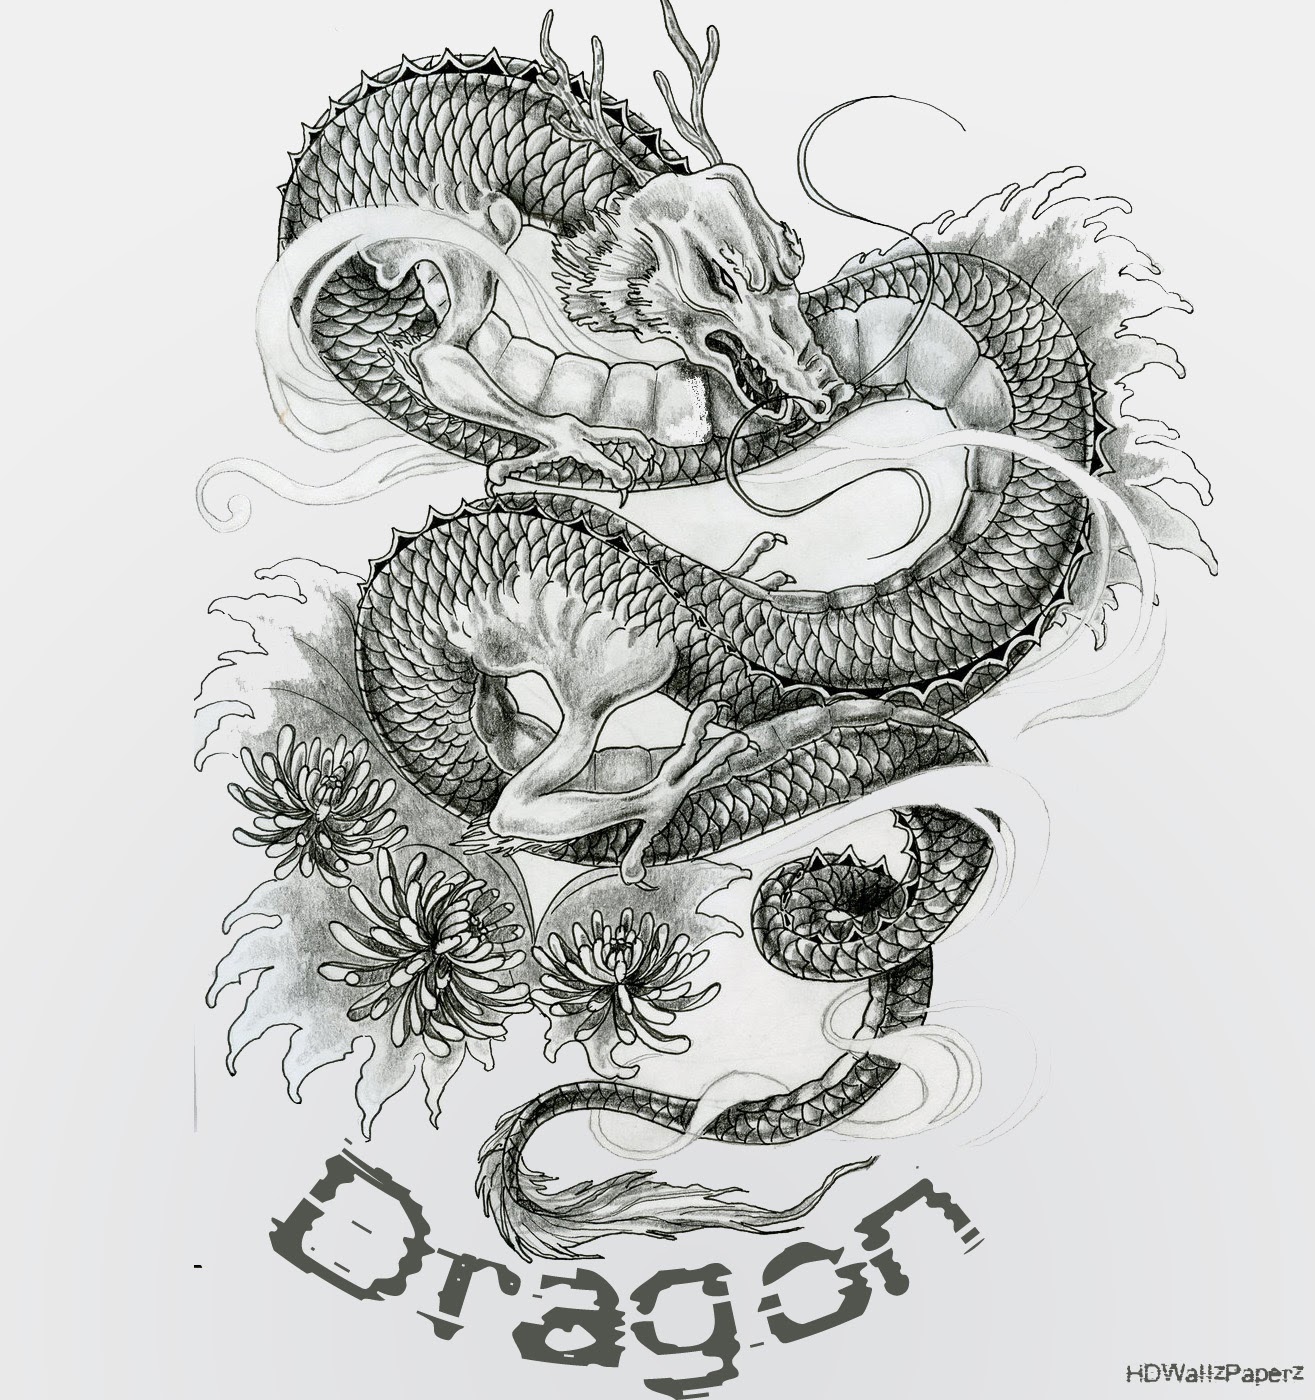 Dragon HD Wallpaper